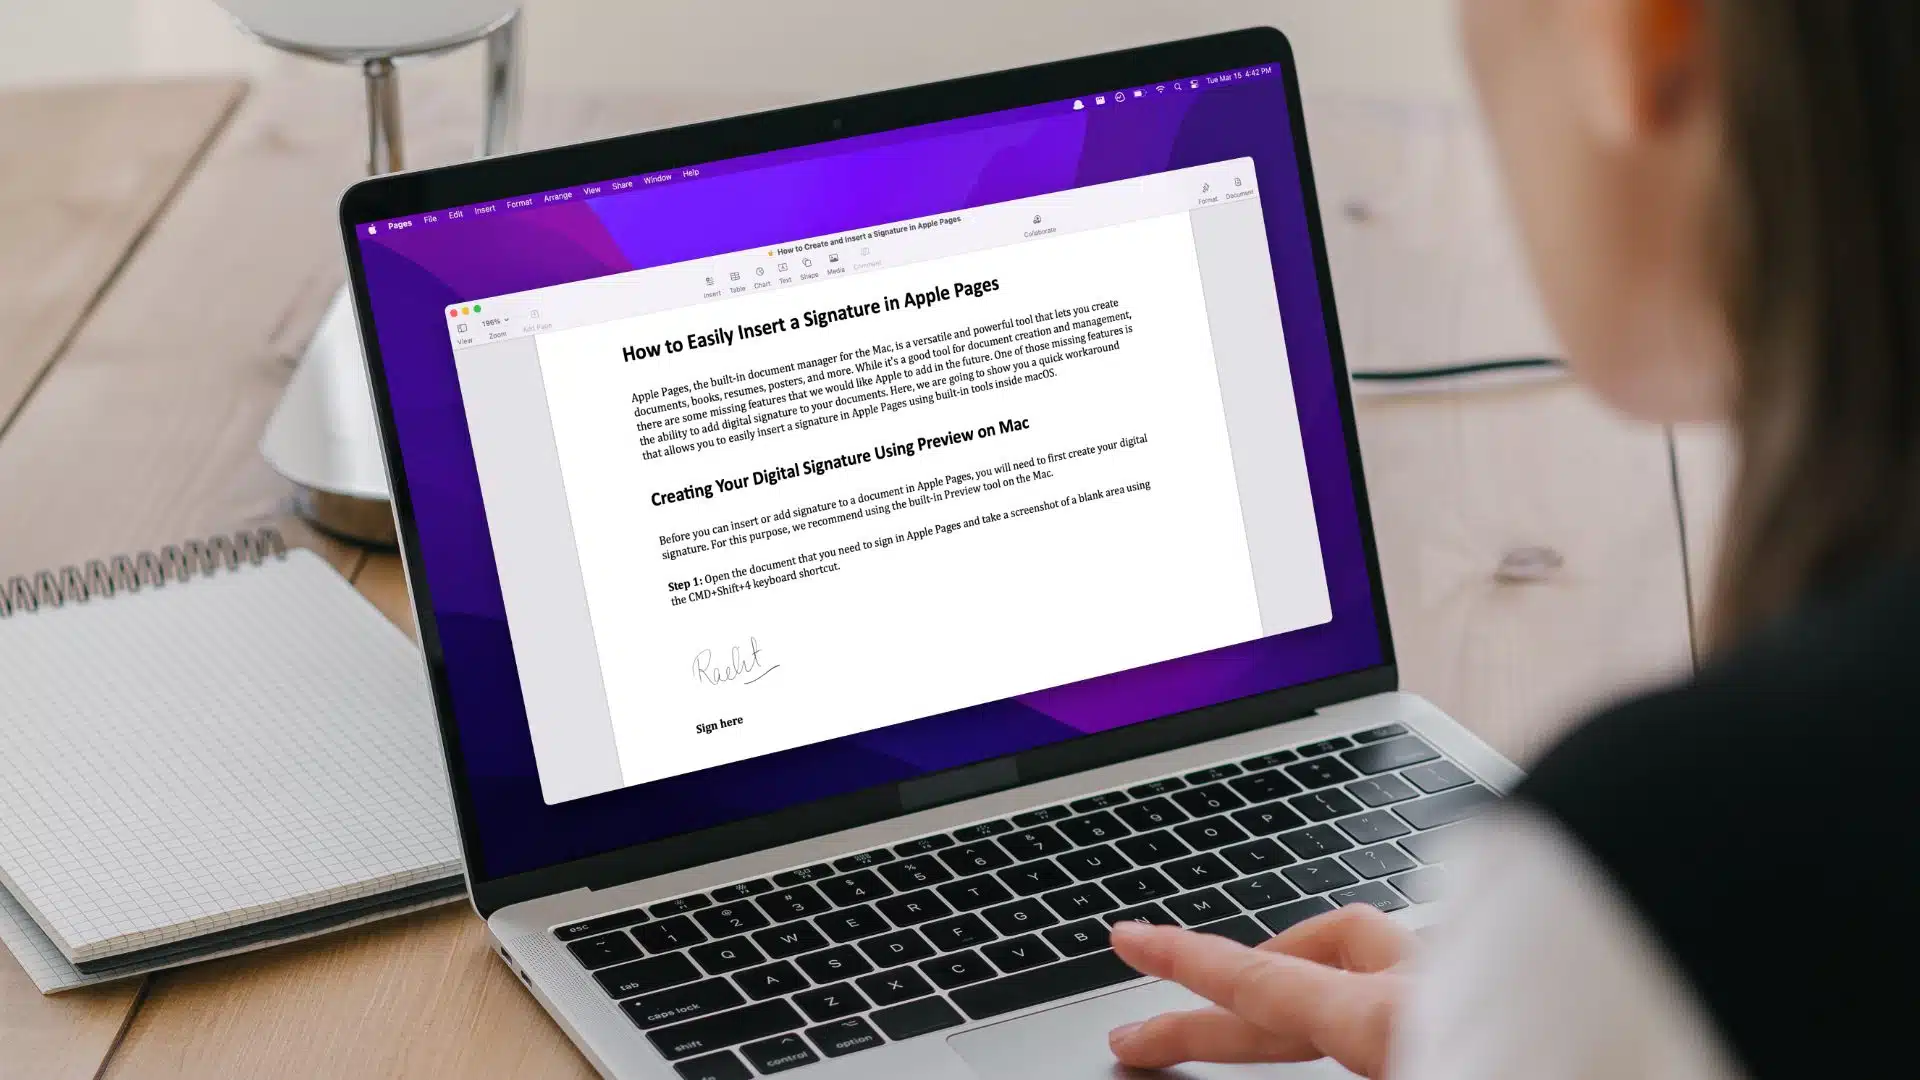 Apple Pages : créer des documents sur Mac